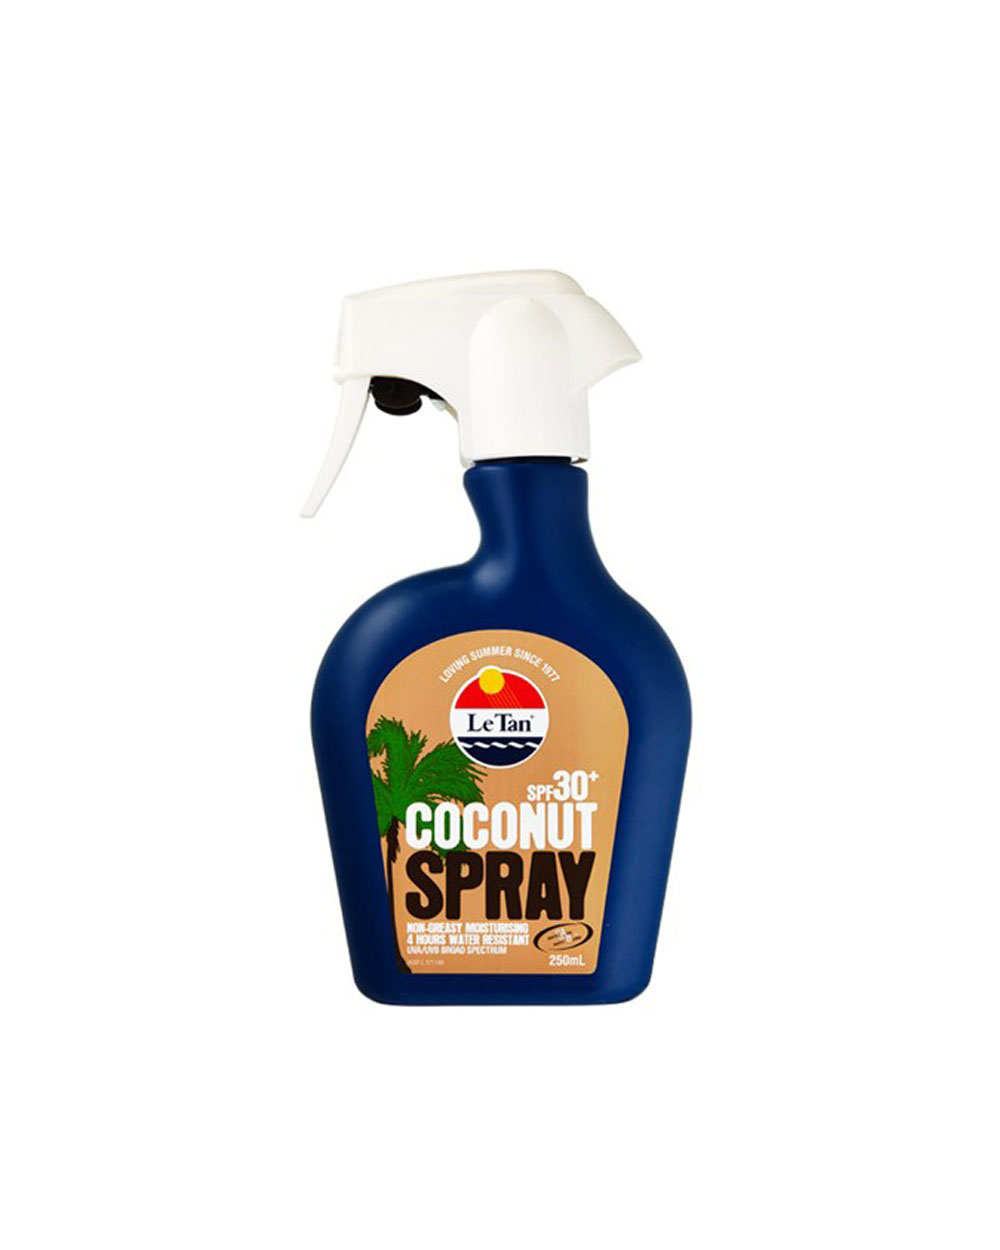 Le Tan Coconut Spray SPF30